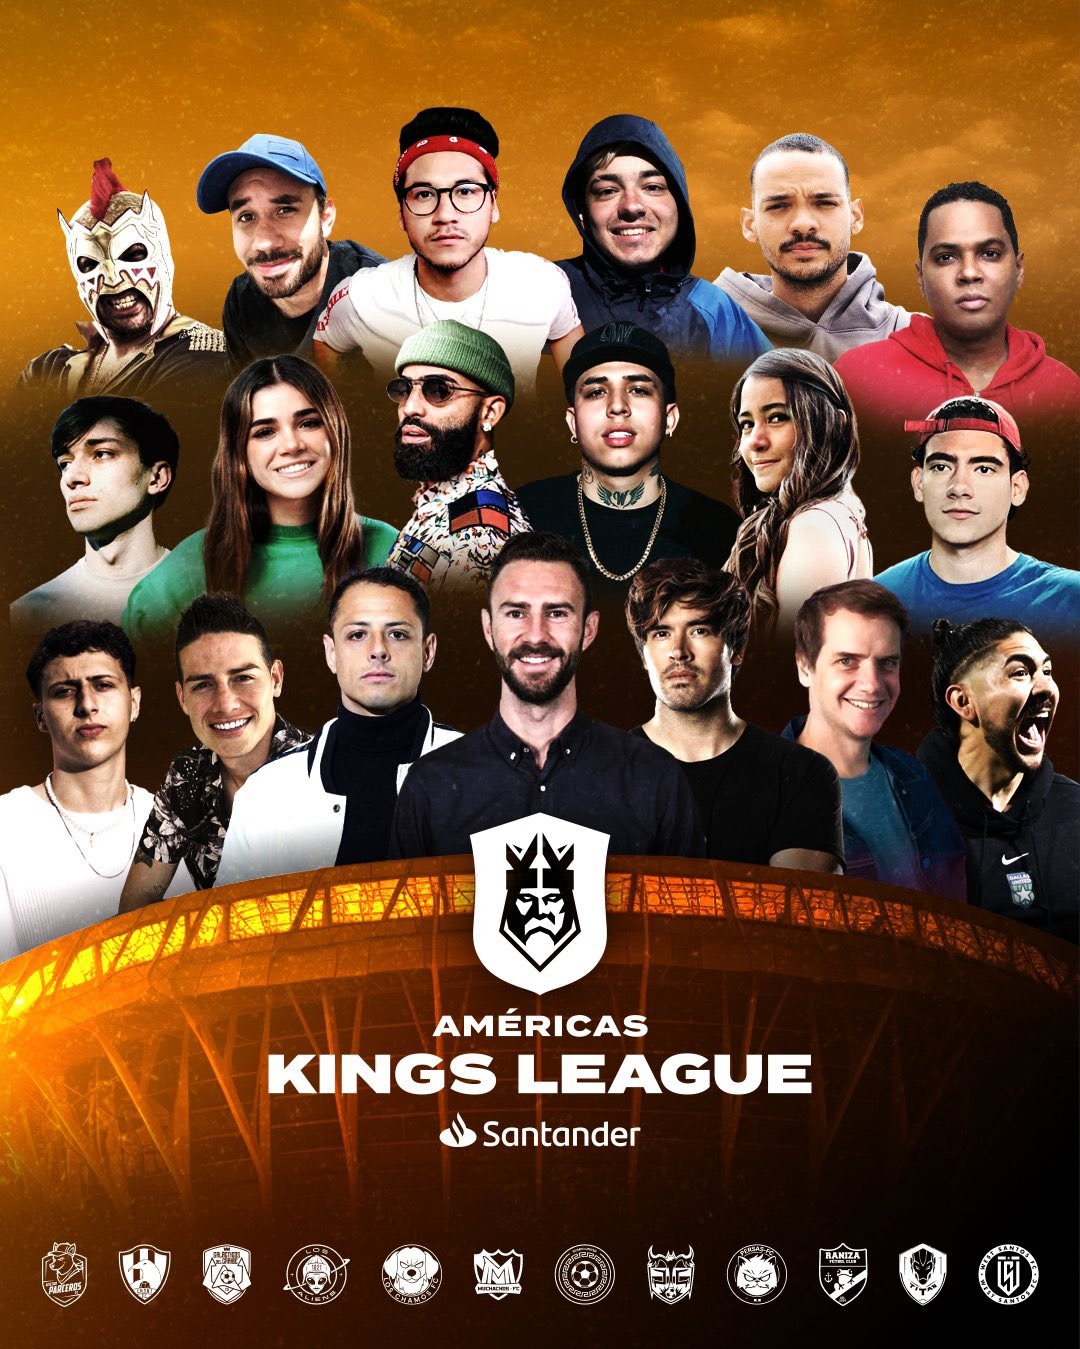 La Kings League llegó a América. | Imagen: @kingsleague_am